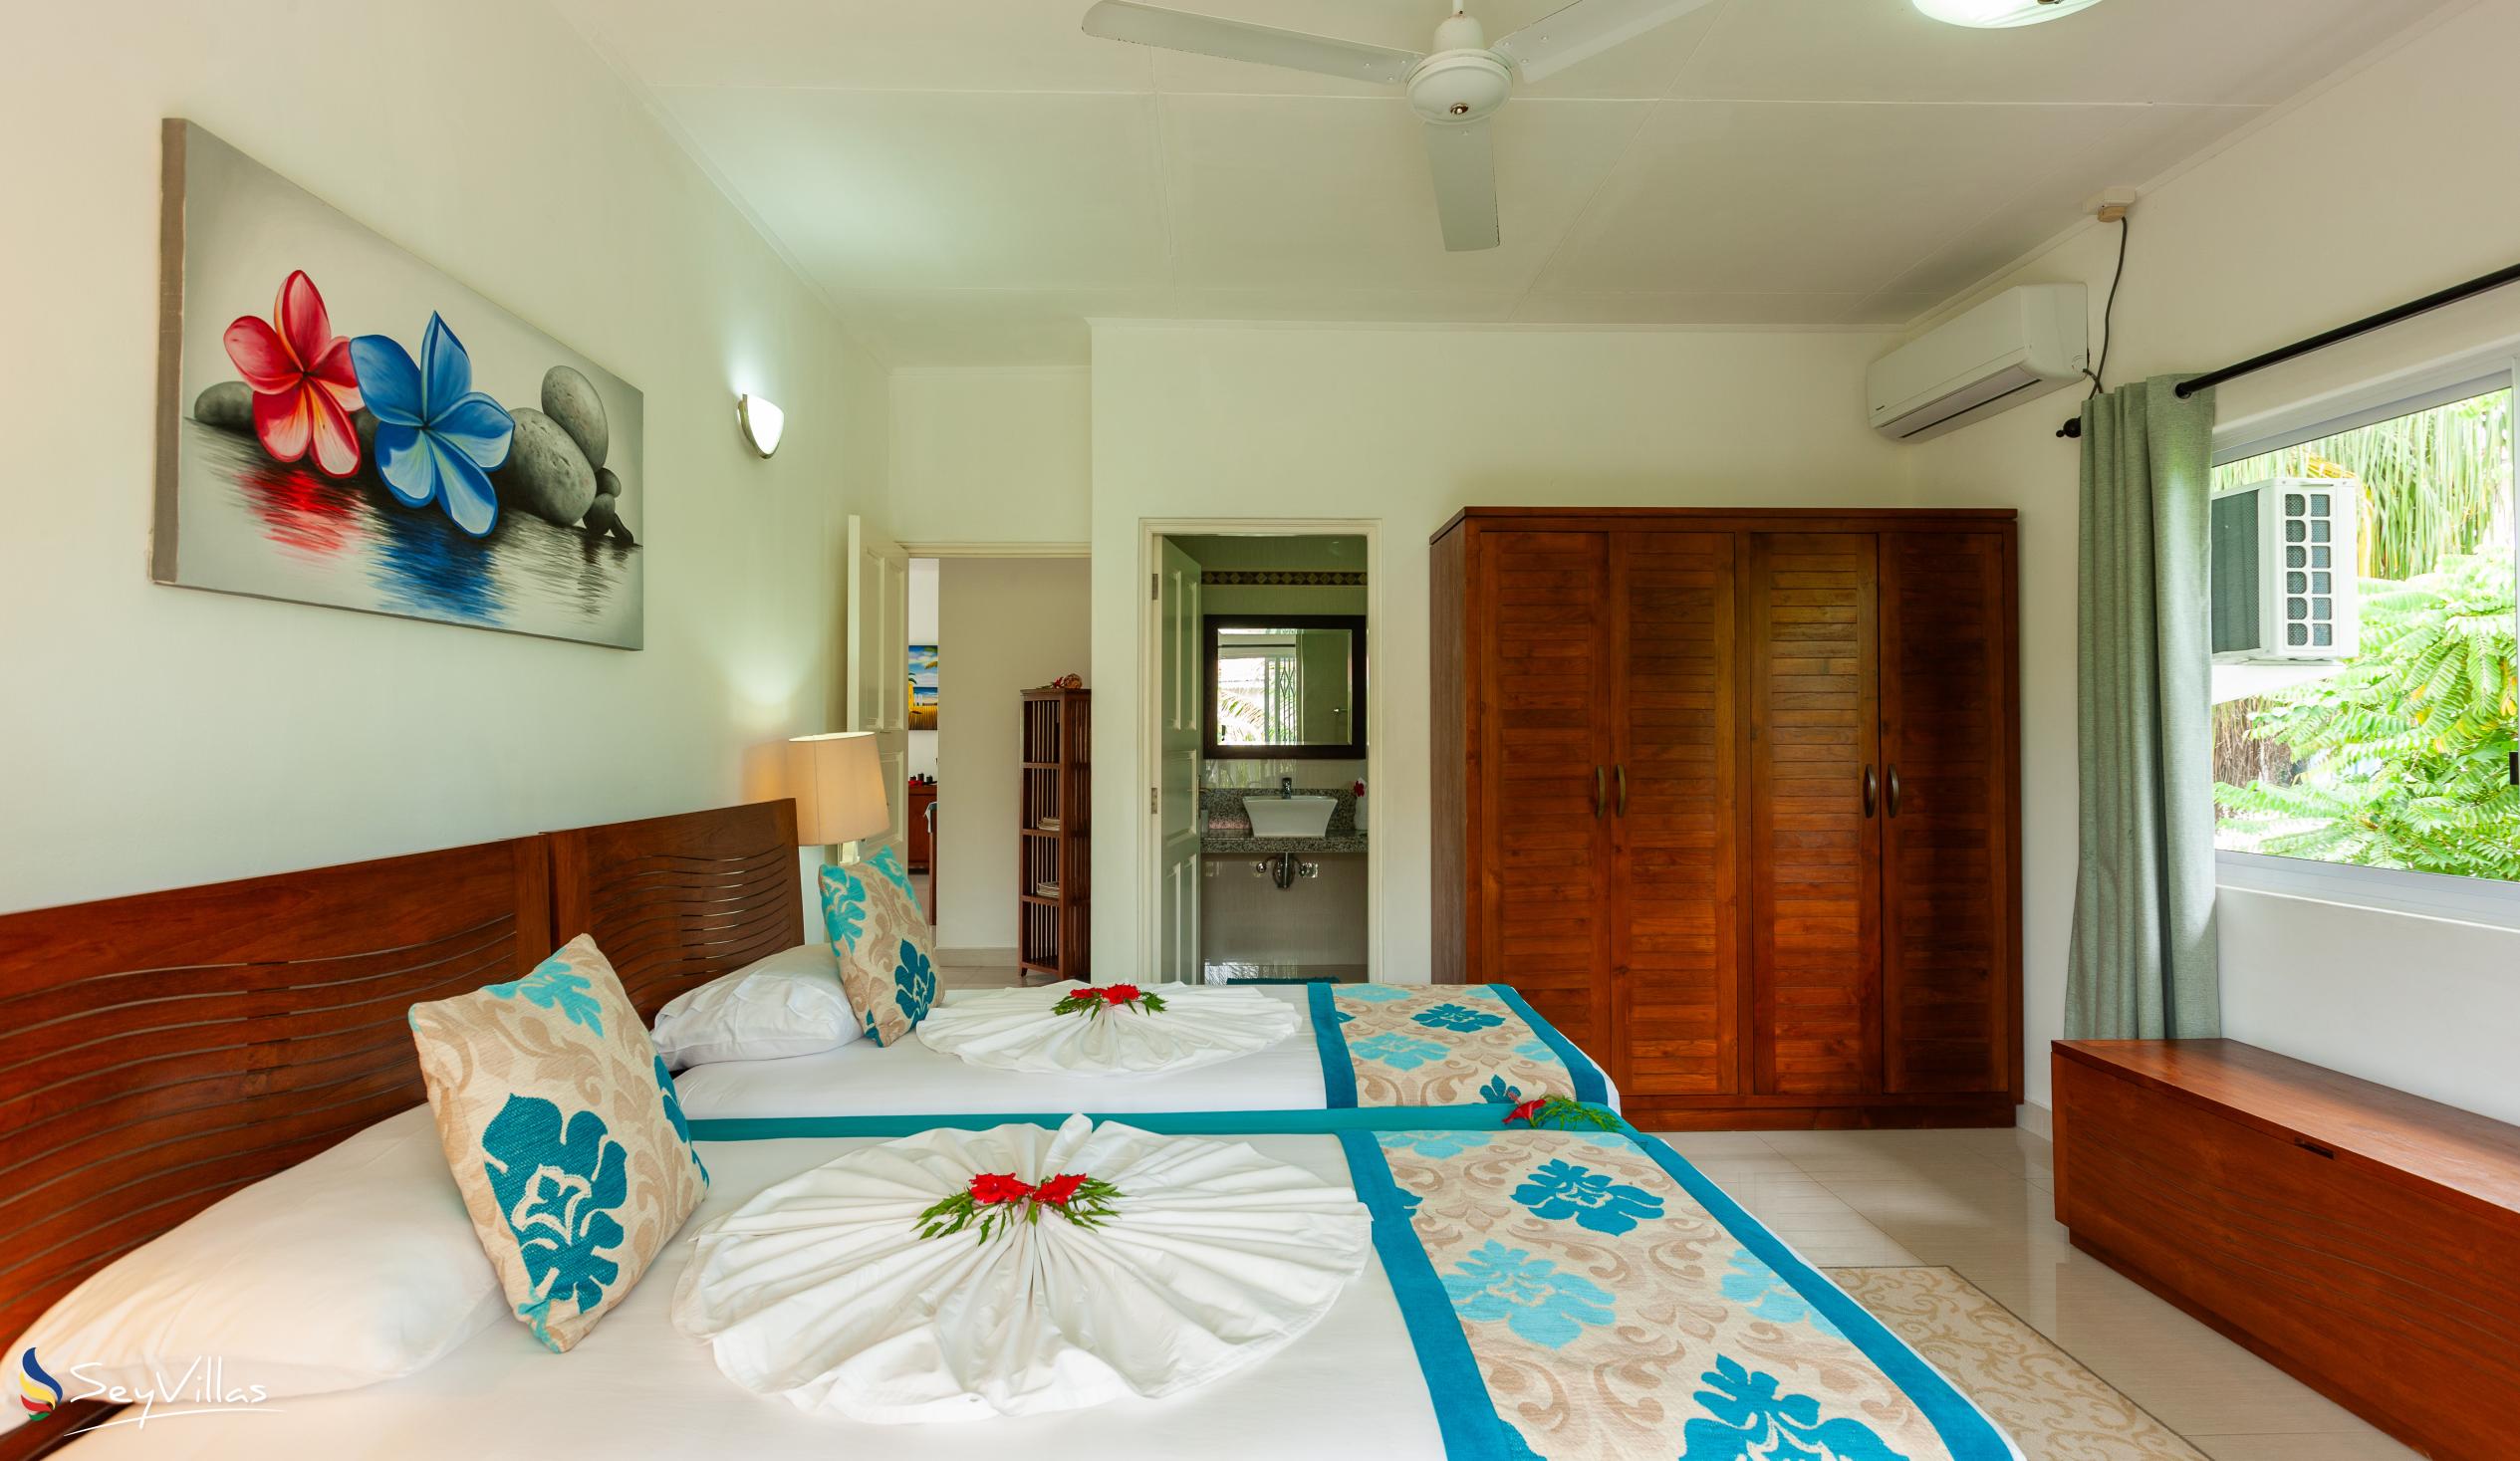 Photo 32: Casa Tara Villas - 2-Bedroom Apartment - Praslin (Seychelles)